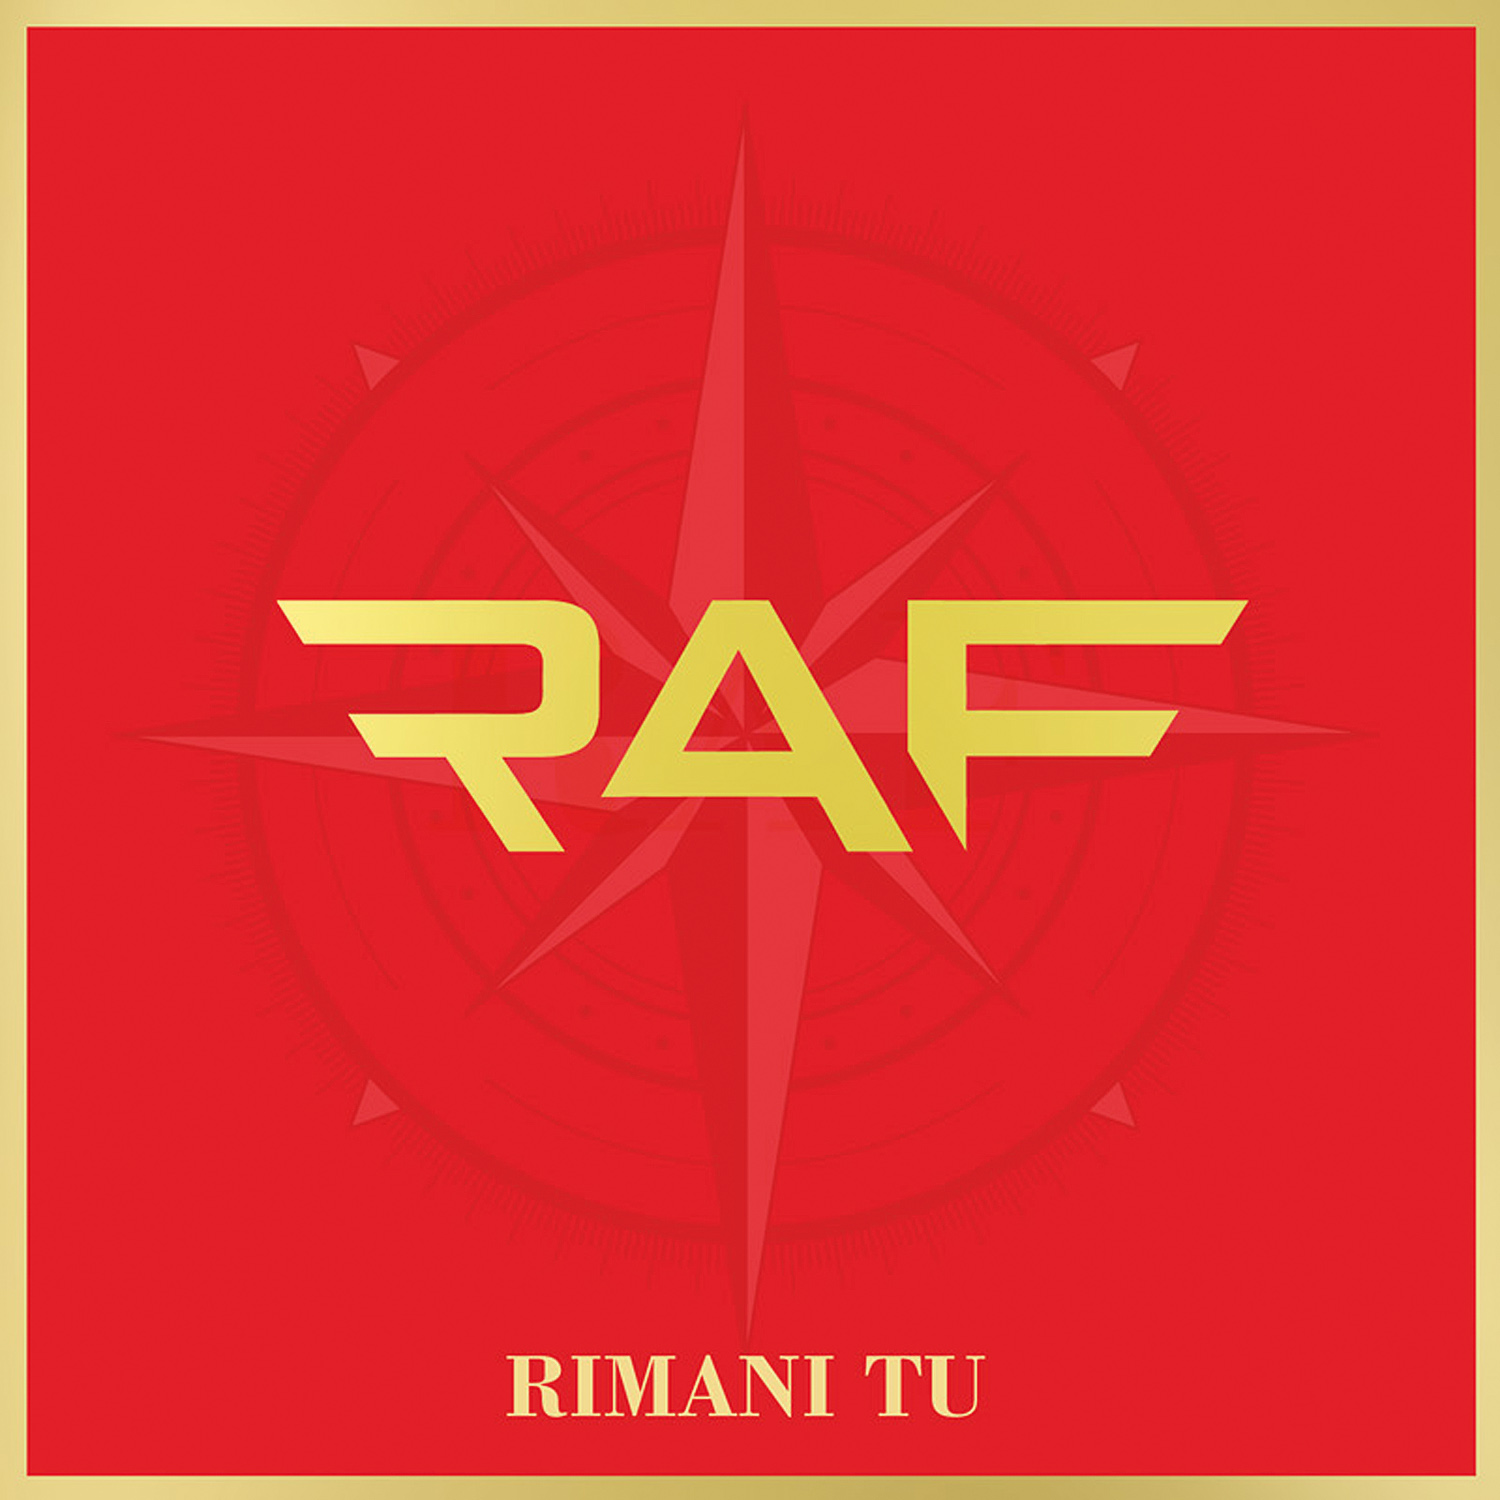  Raf, “Rimani tu” è il nuovo singolo: in radio da venerdì 24 aprile